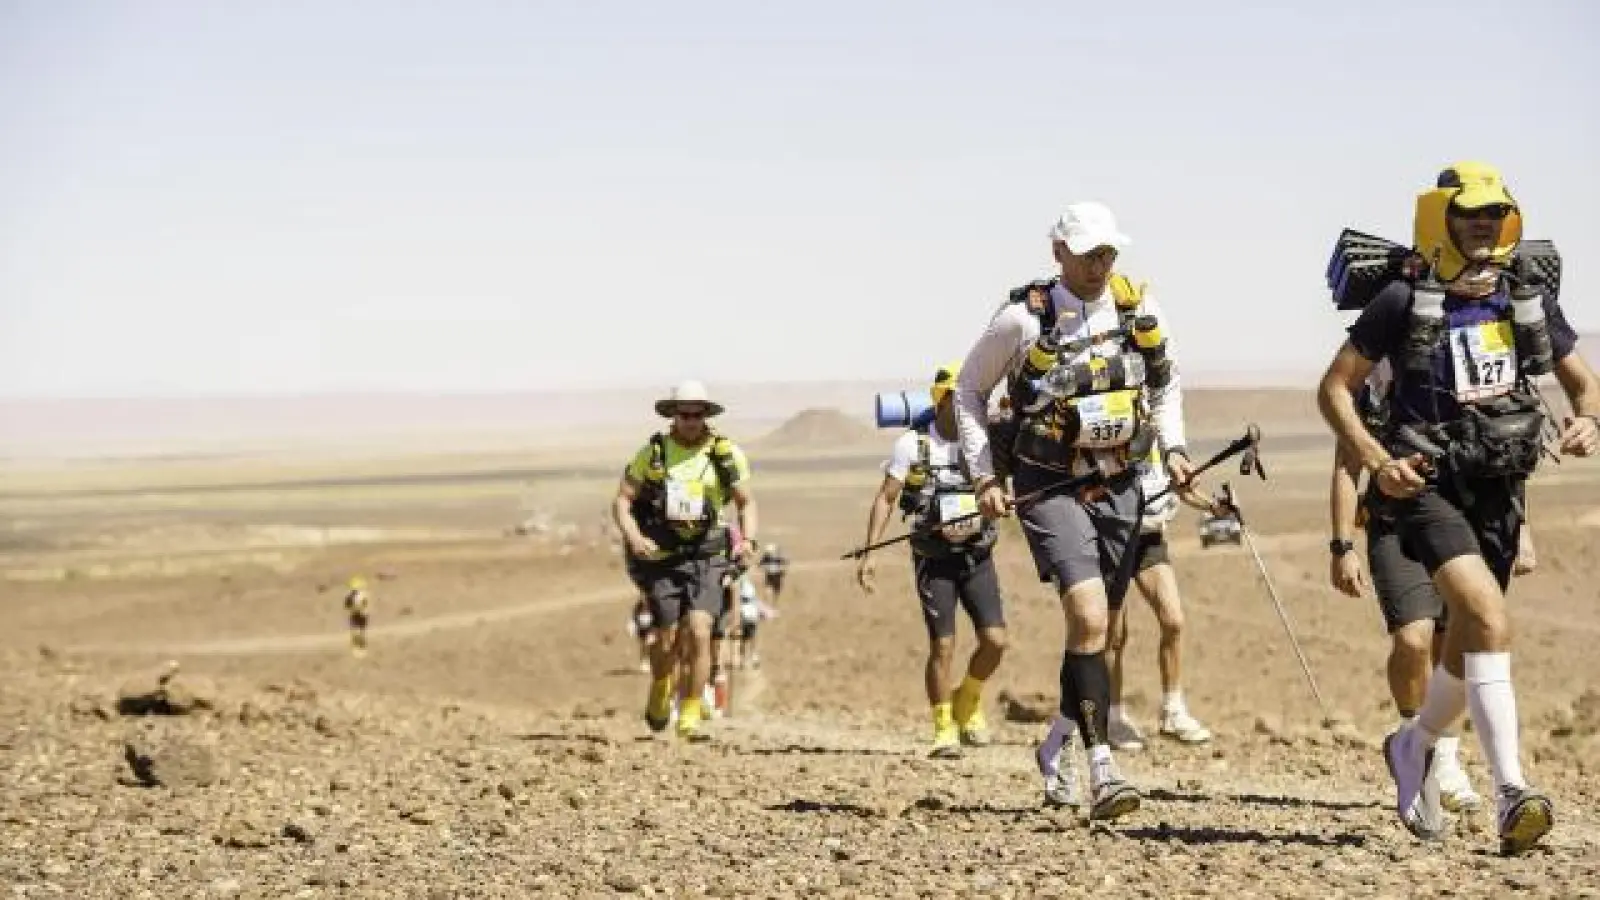 Eine Wüste   wird Viktor Reger (hier in der Sahara, Zweiter von rechts) im Jahr 2021 aufgrund der Corona-Pandemie voraussichtlich nicht durchqueren. Stattdessen möchte er jeden Tag laufen.	Foto: privat (Foto: privat)